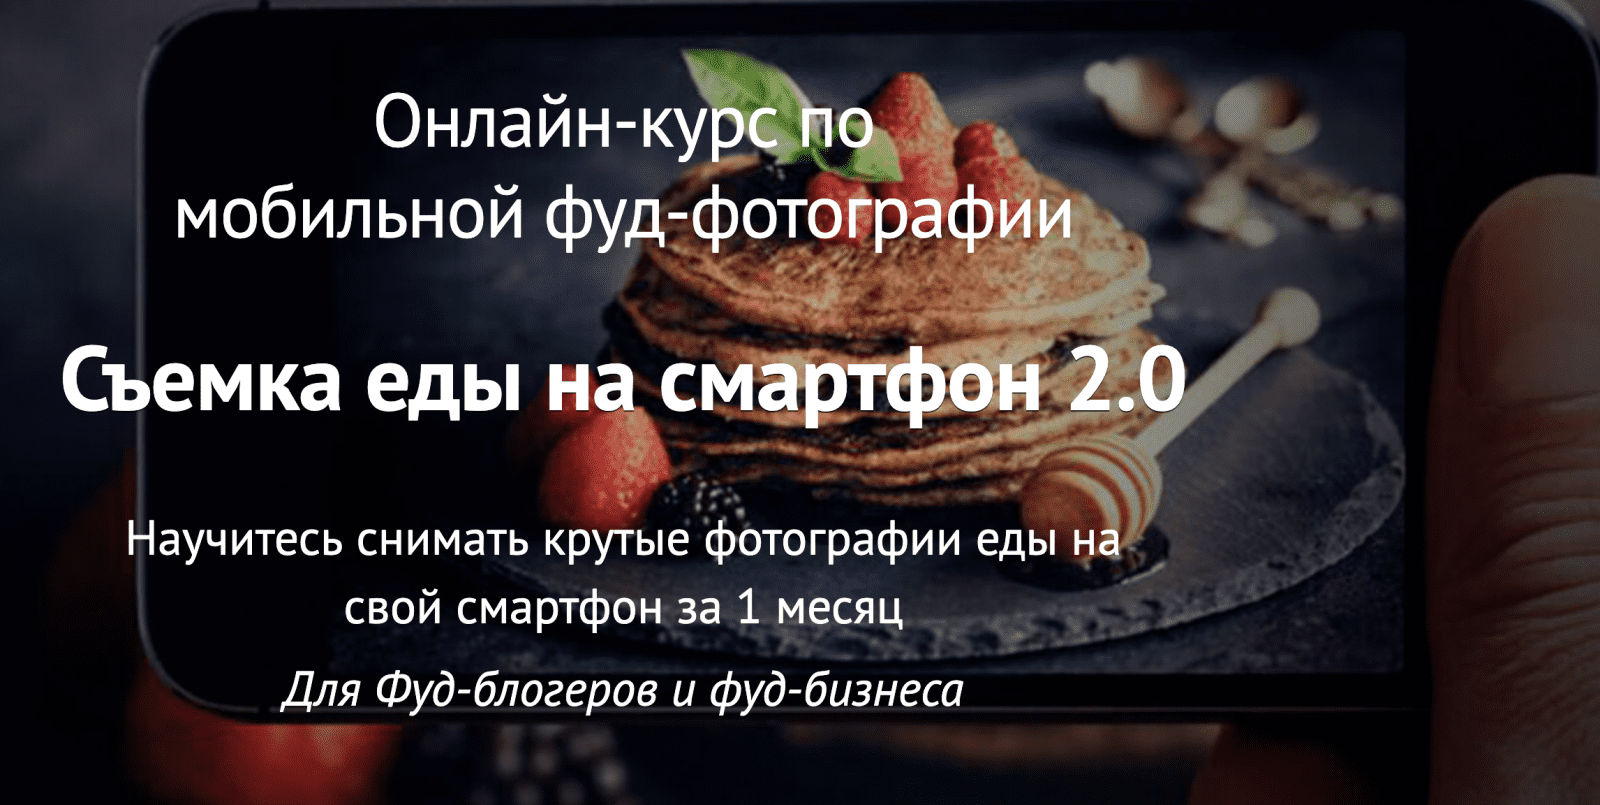 Изображение [Вадим Закиров] Съемка еды на смартфон 2.0 (2022) в посте 256489